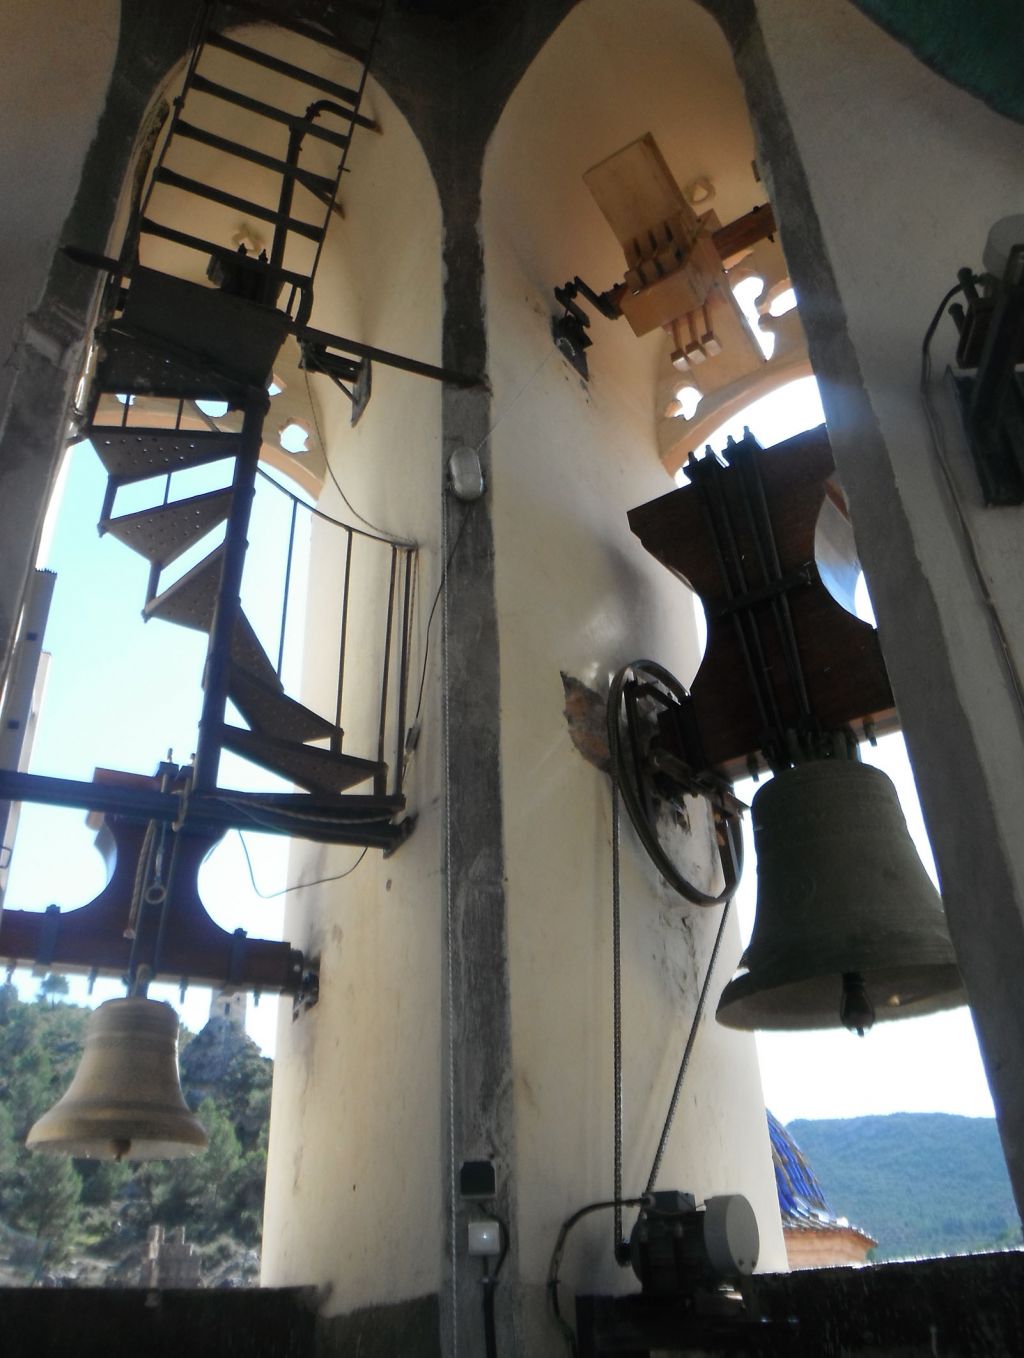  Campaneros de Moixent organizan visitas guiadas para mostrar los toques y características de las campanas de la parroquia